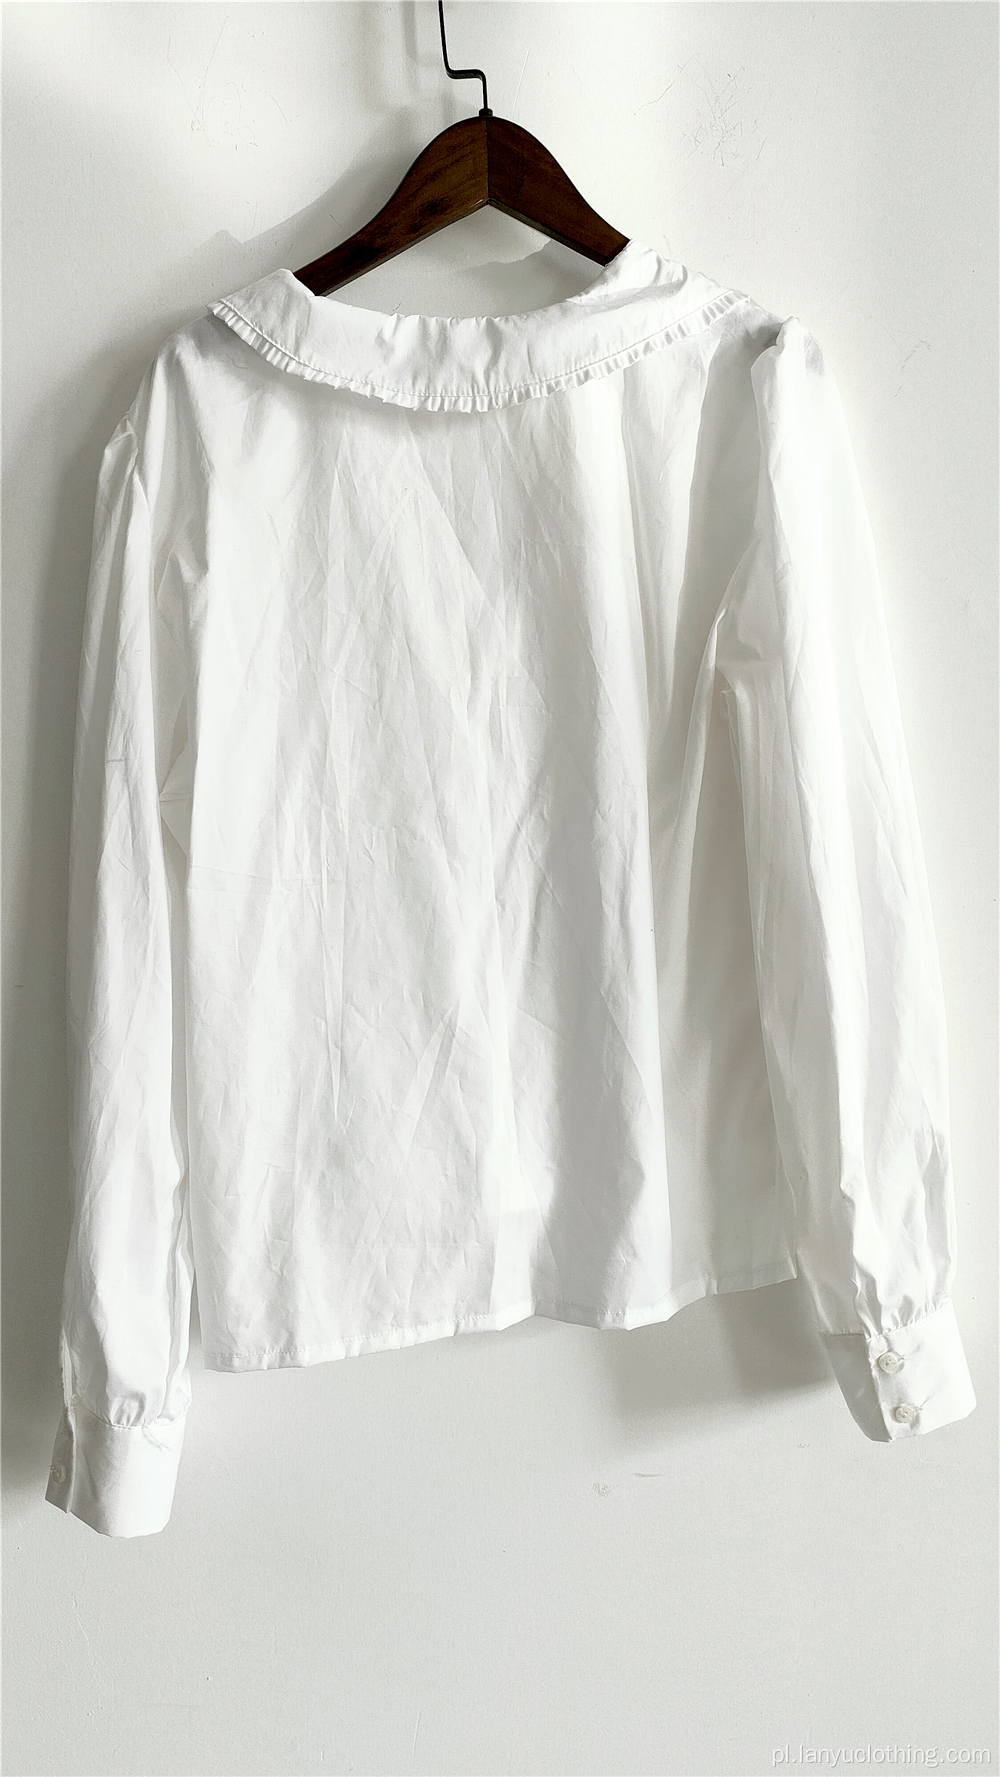 Biała luźna bluzka w stylu vintage